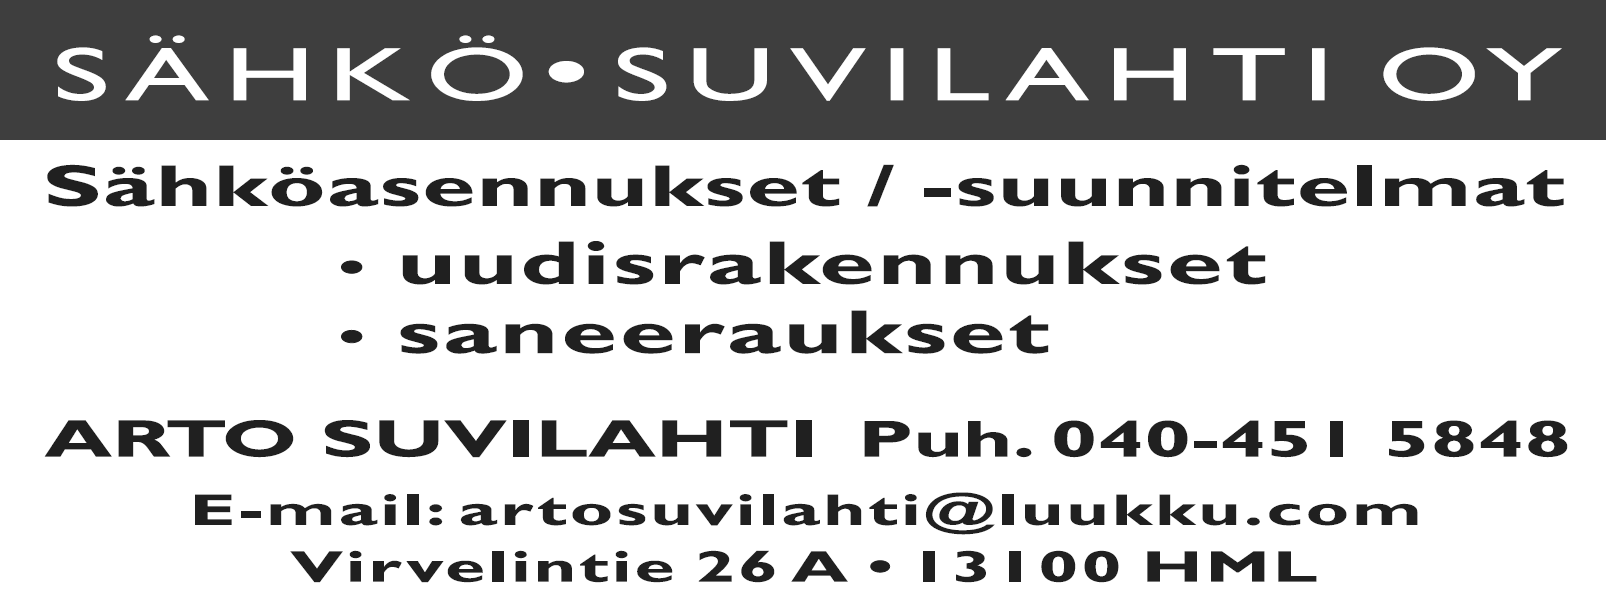 Jani Vainio Oy Maanrakennustyöt www.metavest.fi TOMI SYRJÄNEN, PUH. 0400 702 528 0500 742 456 Matto-, laatta- ja parkettiasennukset HÄMEENLINNA info@sahkosuvilahti.